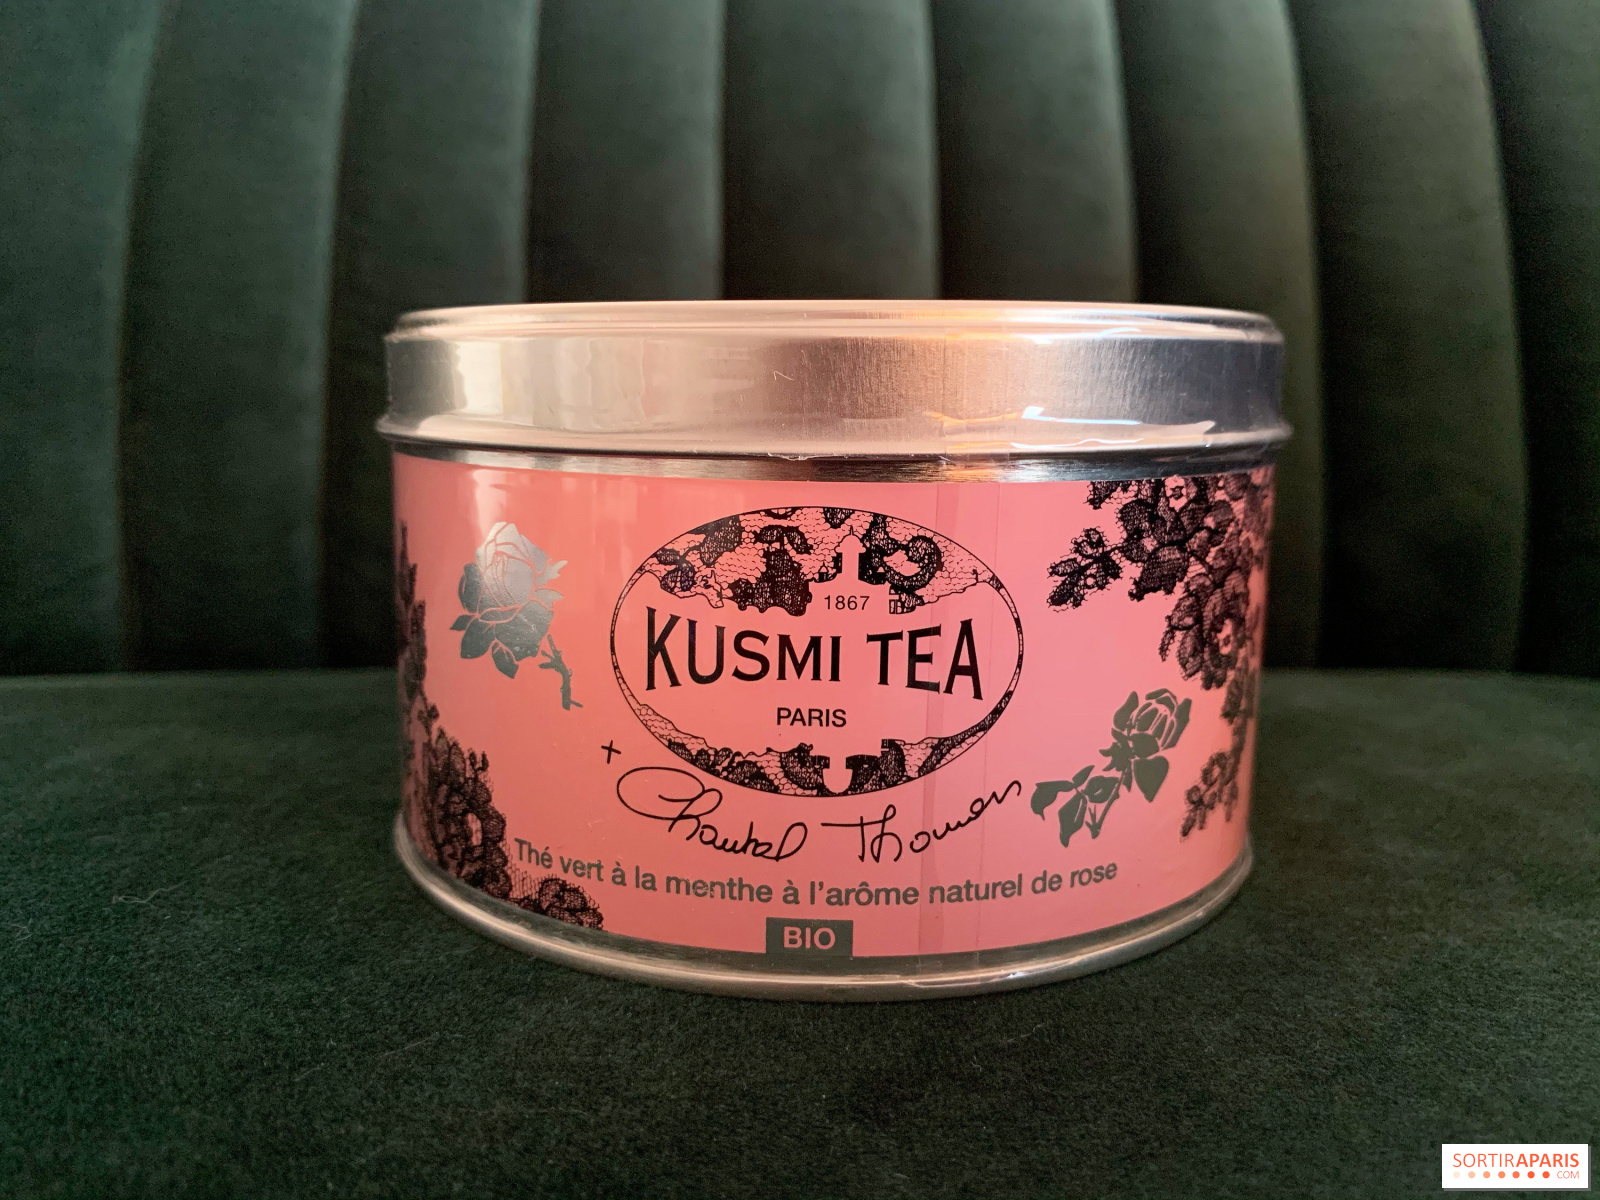 Pink October 2020: Chantal Thomass and Kusmi Tea team up for a tea 